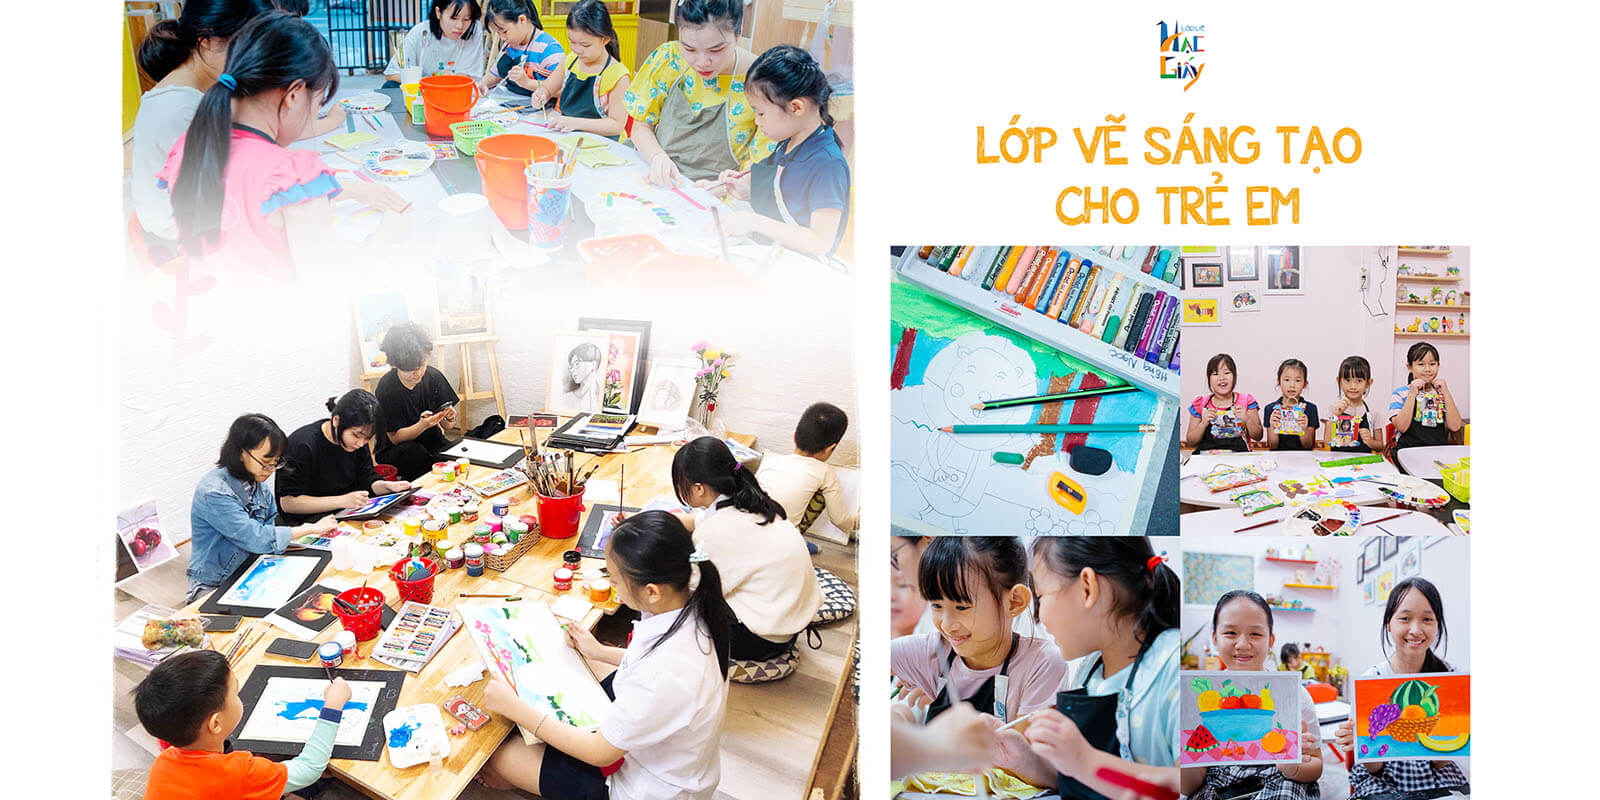 Nếu bạn đang tìm kiếm một lớp vẽ trẻ em tại thành phố Đà Nẵng, hãy đến với Hạc Giấy! Chúng tôi mang đến cho các bé một không gian yêu thương, tạo điều kiện để trẻ phát huy khả năng sáng tạo bản thân. Hãy đến và xem những tác phẩm tuyệt vời của các em nhỏ!